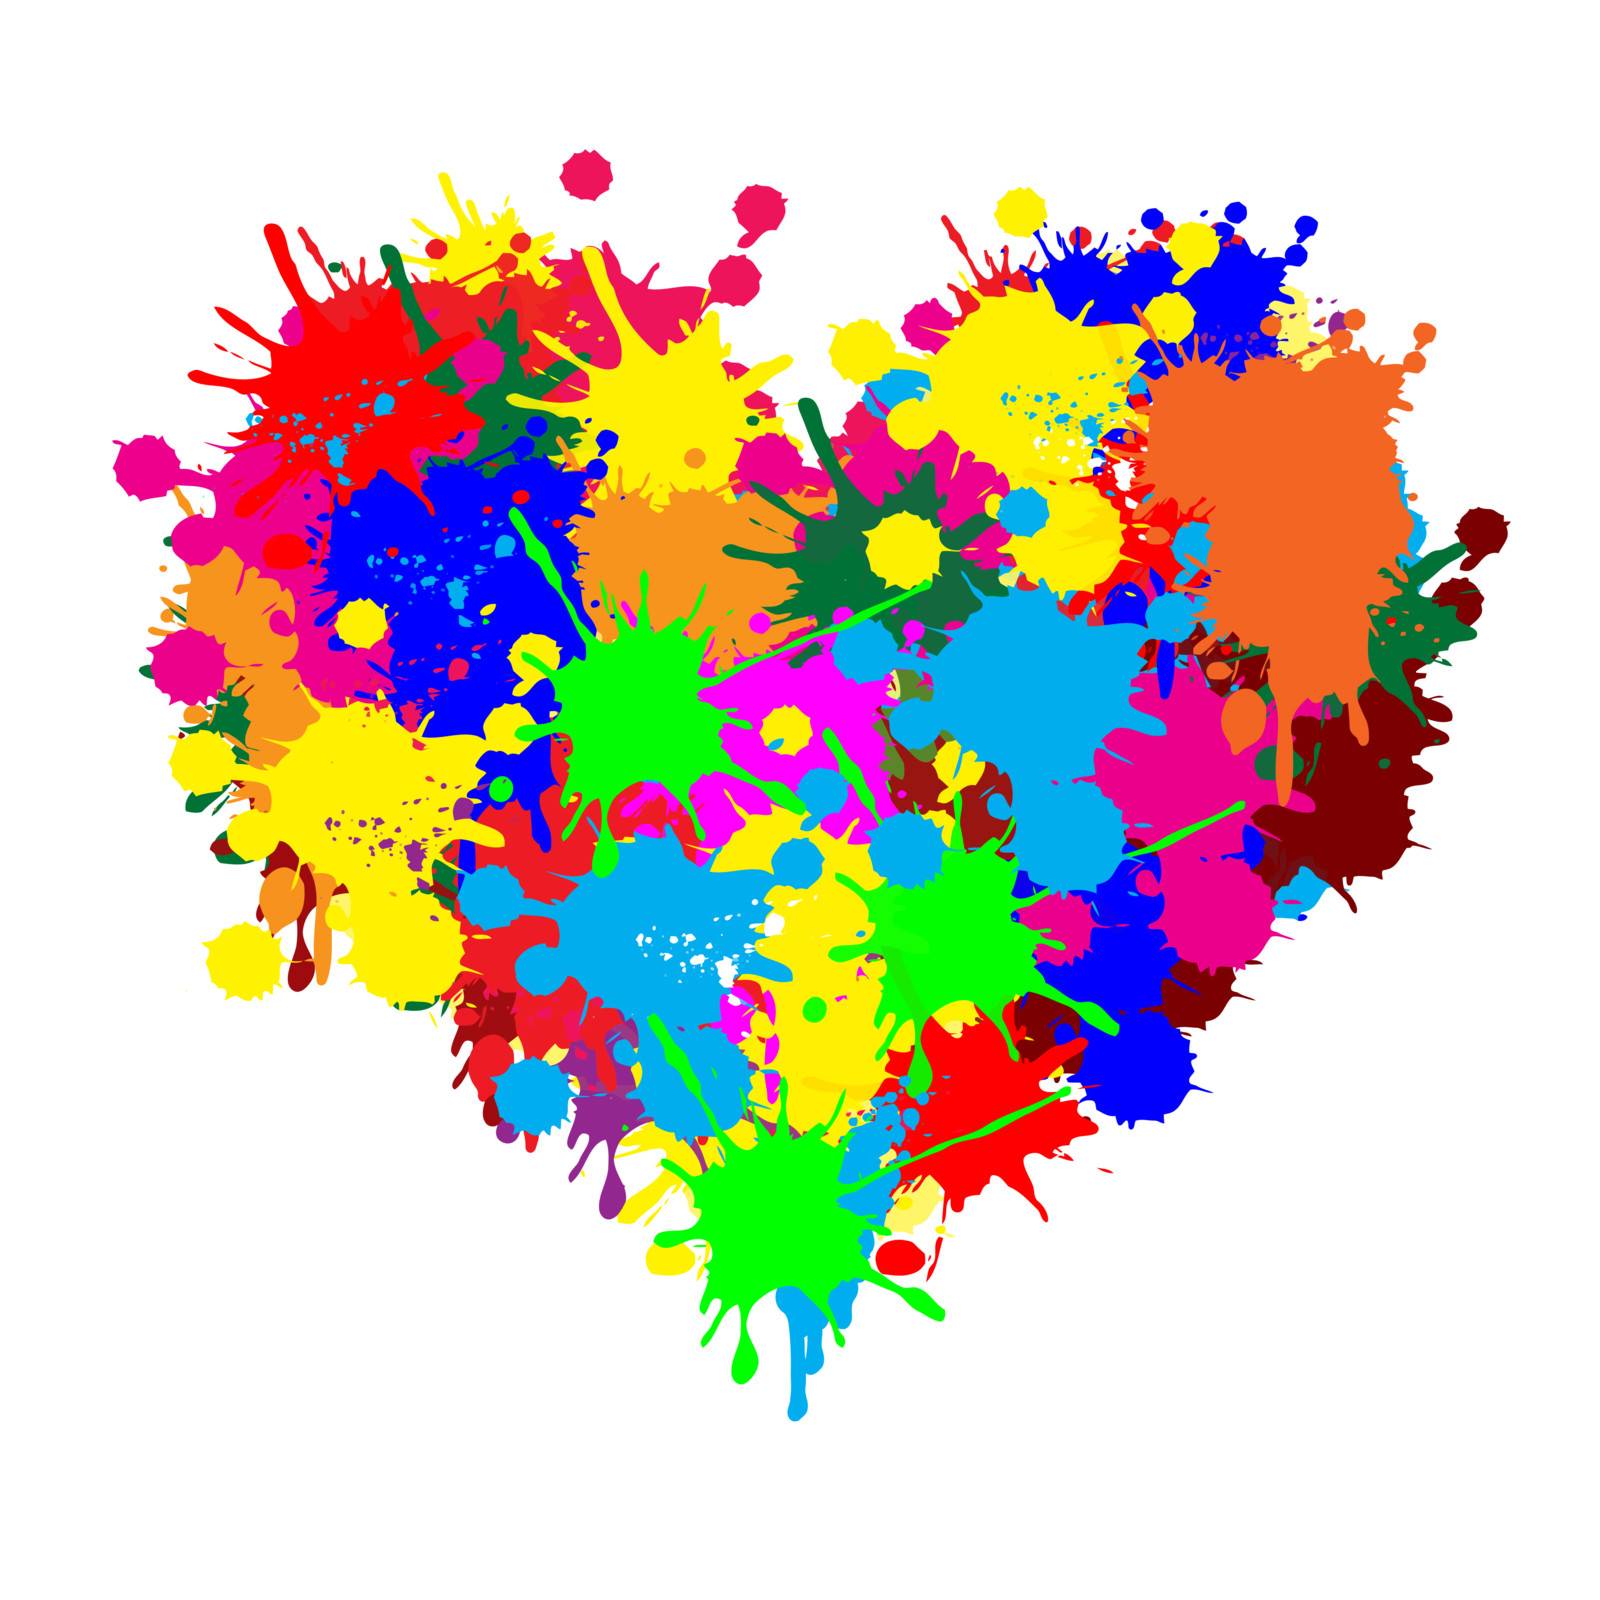 Paint splatter heart by roxanabalint